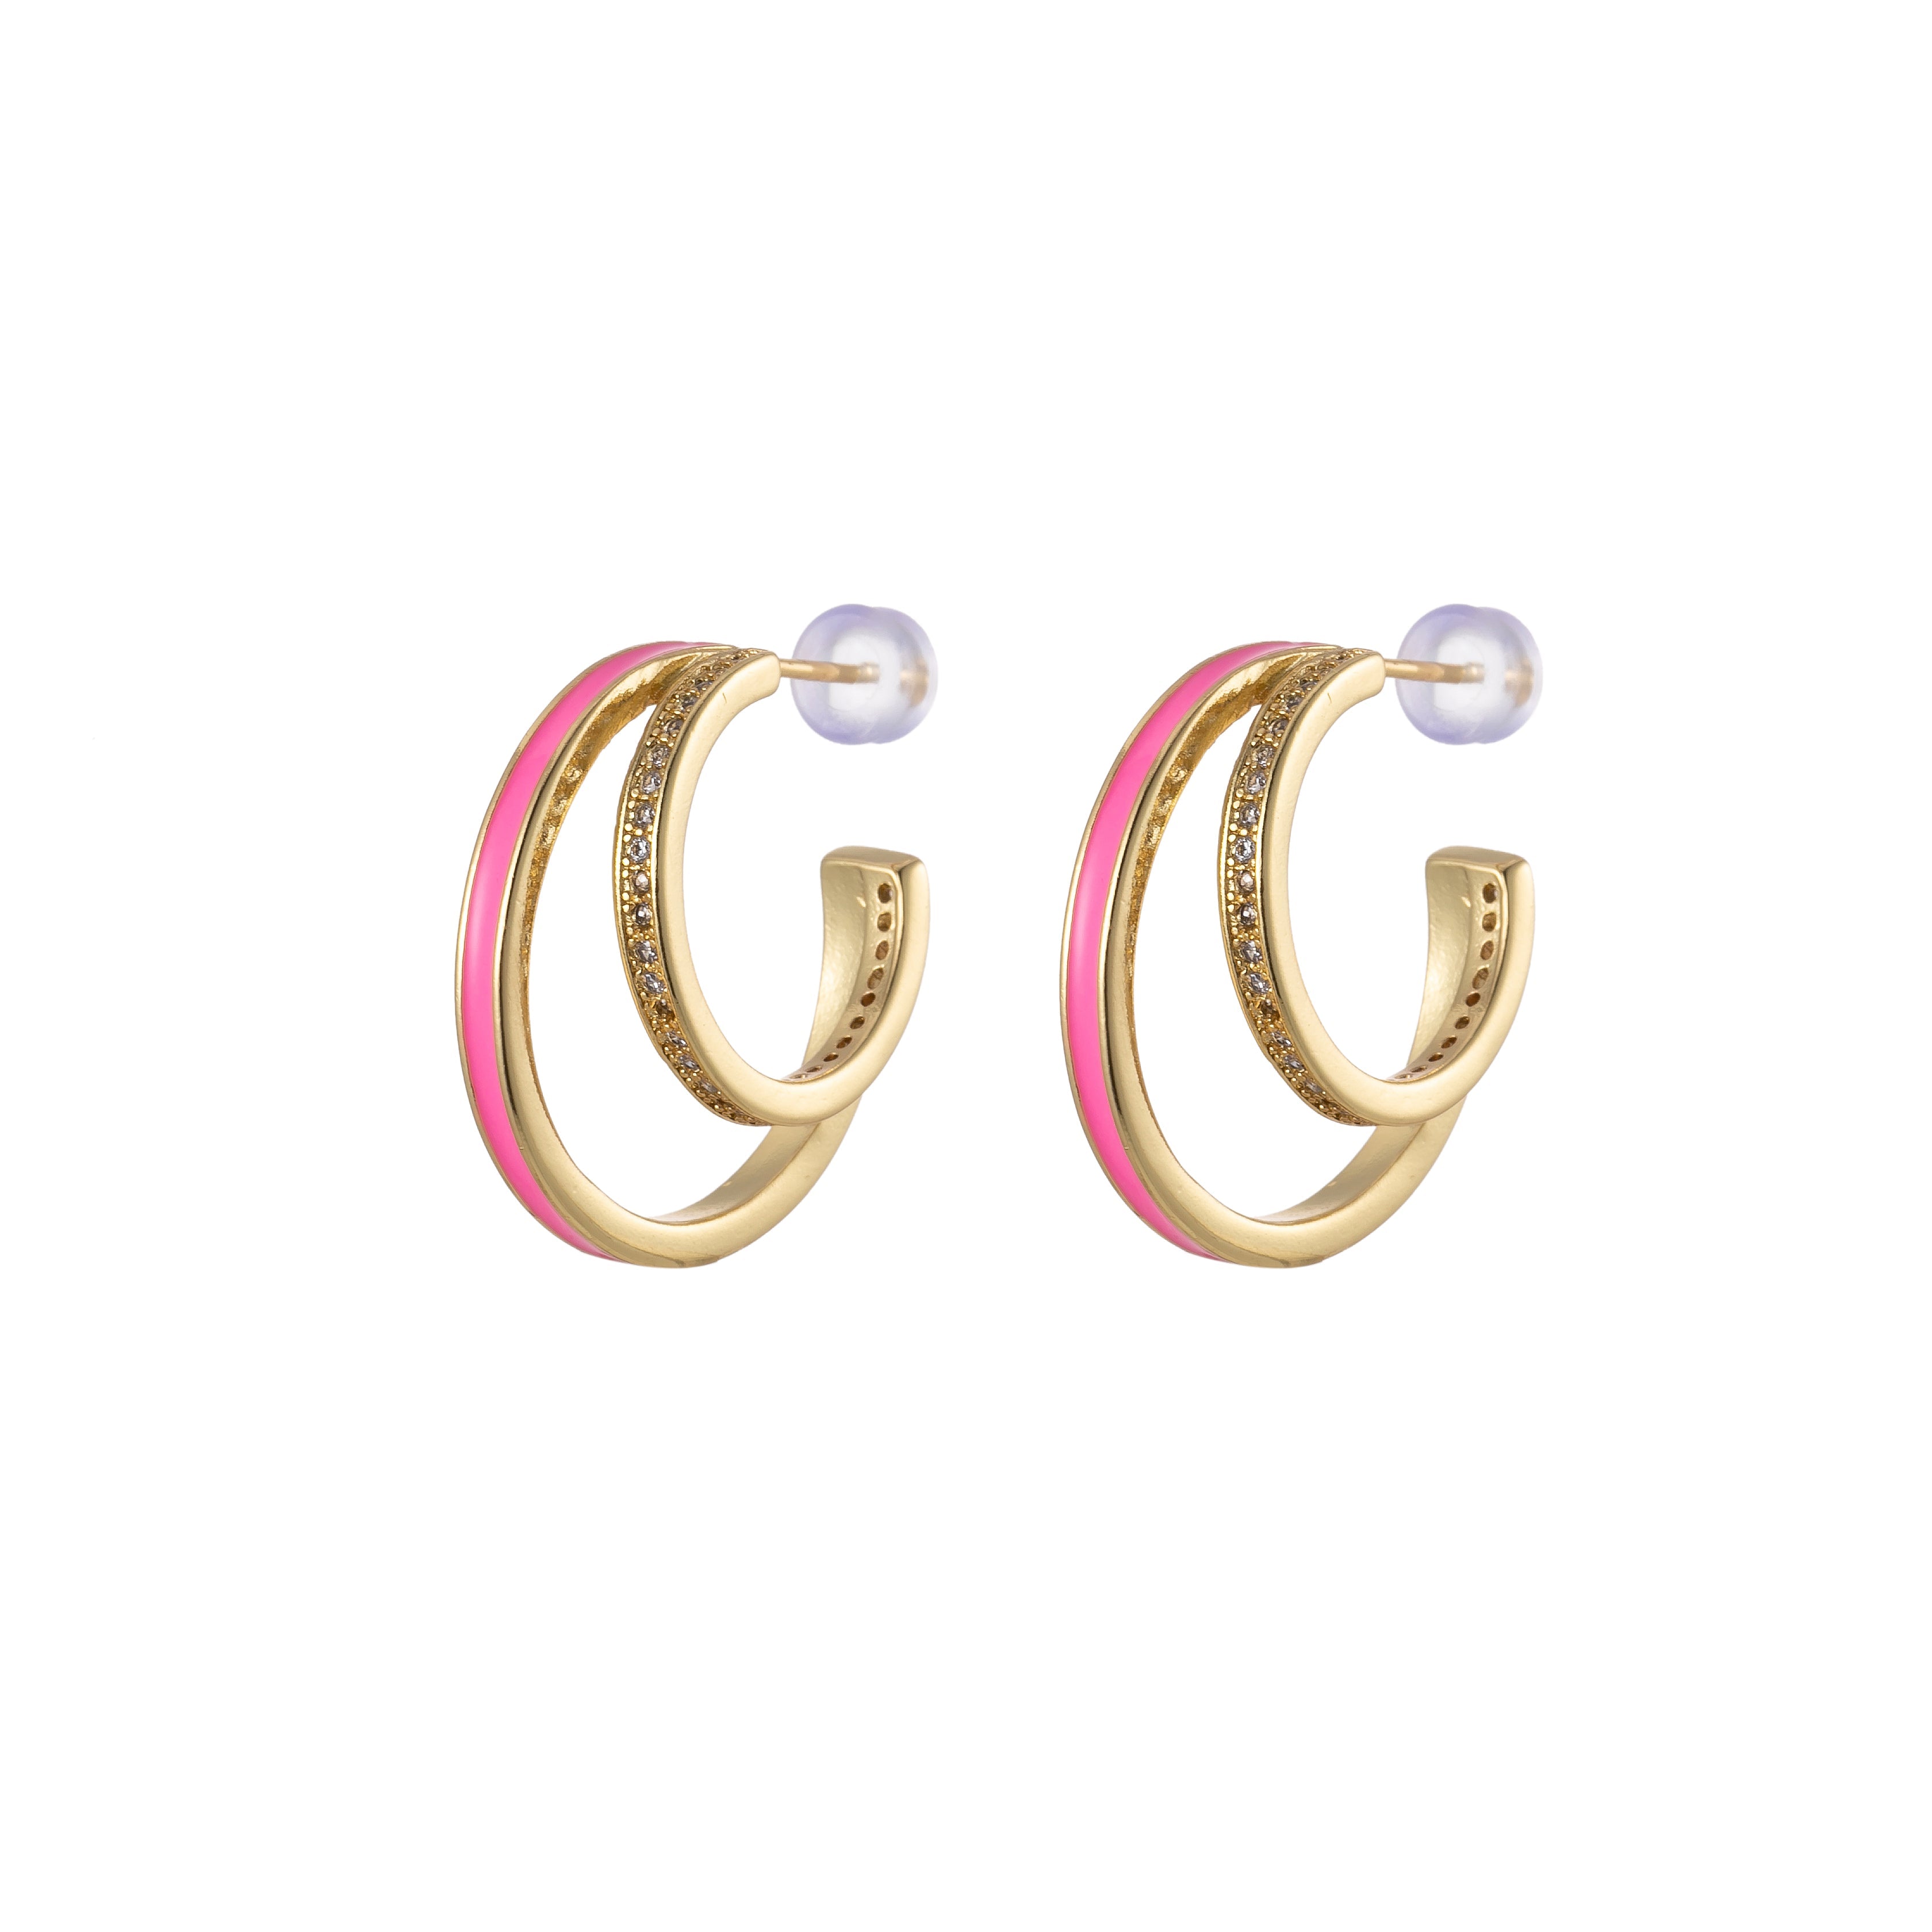 1 pair Enamel Hoops Gold, 14K Gold Filled Hoops, Large Gold Hoop Earrings, Small Hoops Black Pink Red White Earrings, Chunky Light Hoops - DLUXCA